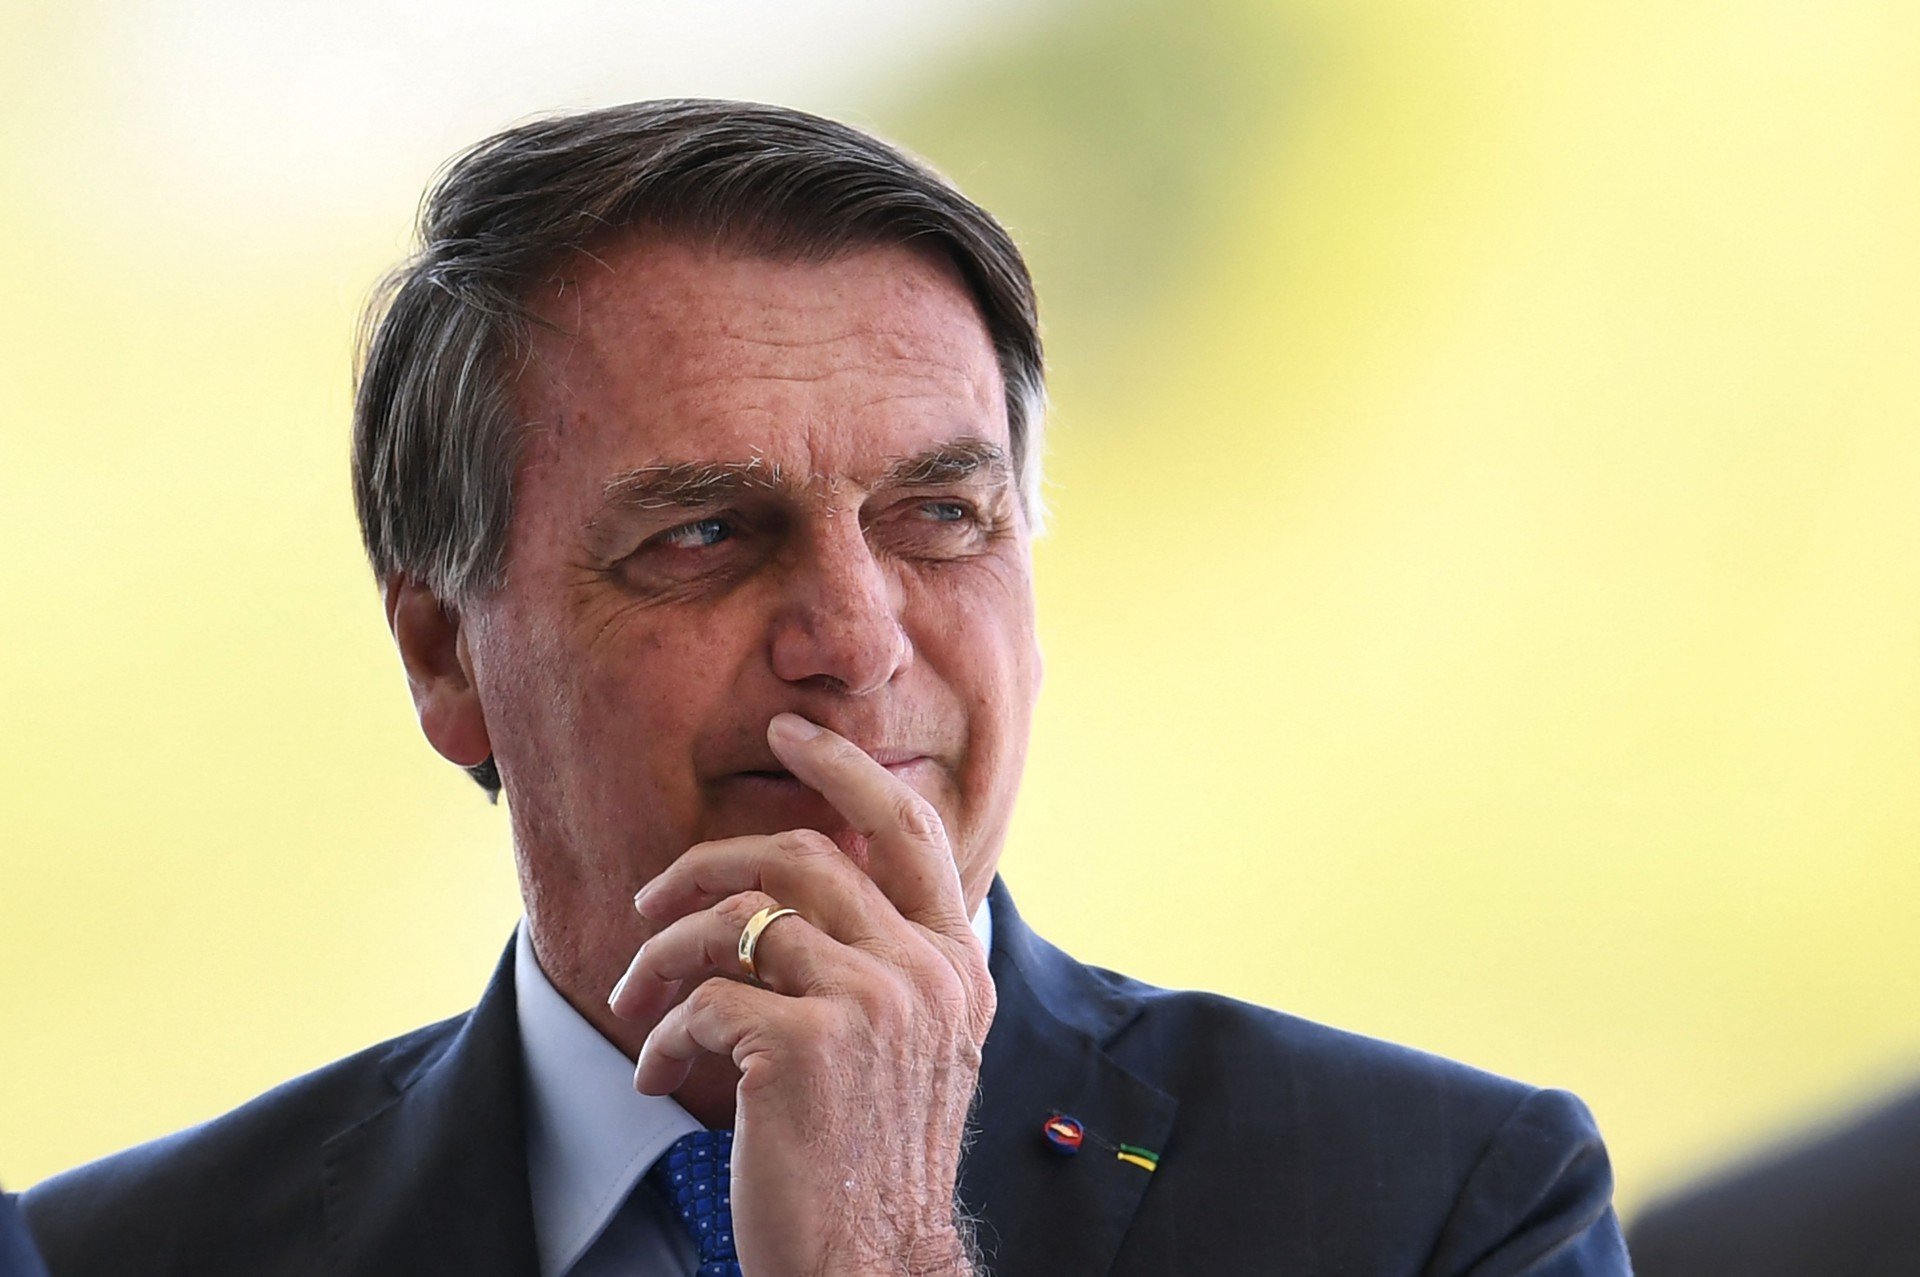 Em recado ao STF, Bolsonaro fala em ‘enquadrar’ quem não respeita a Constituição